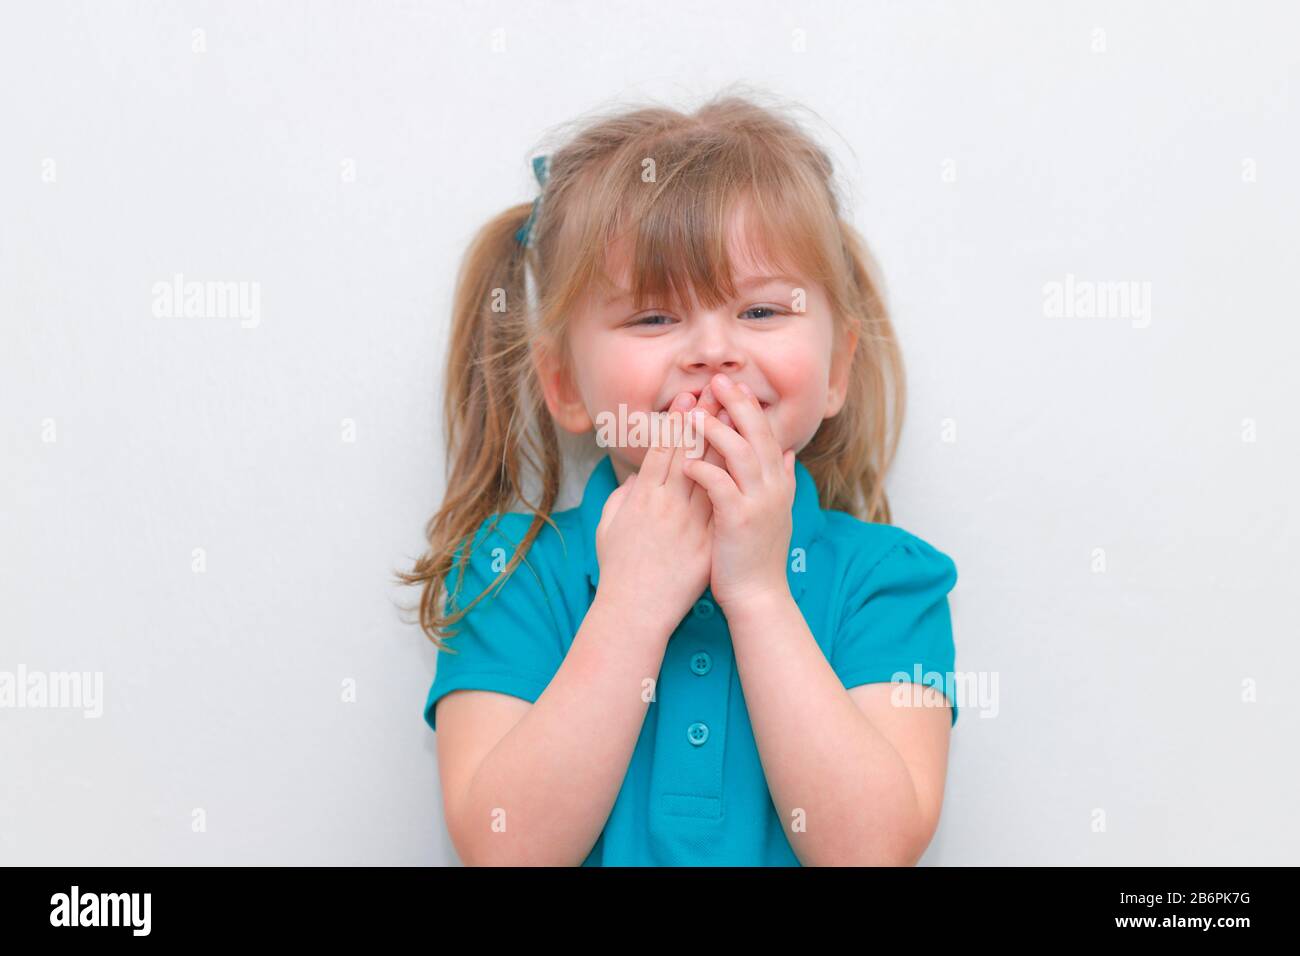 Une fille de 4 ans en riant Banque D'Images